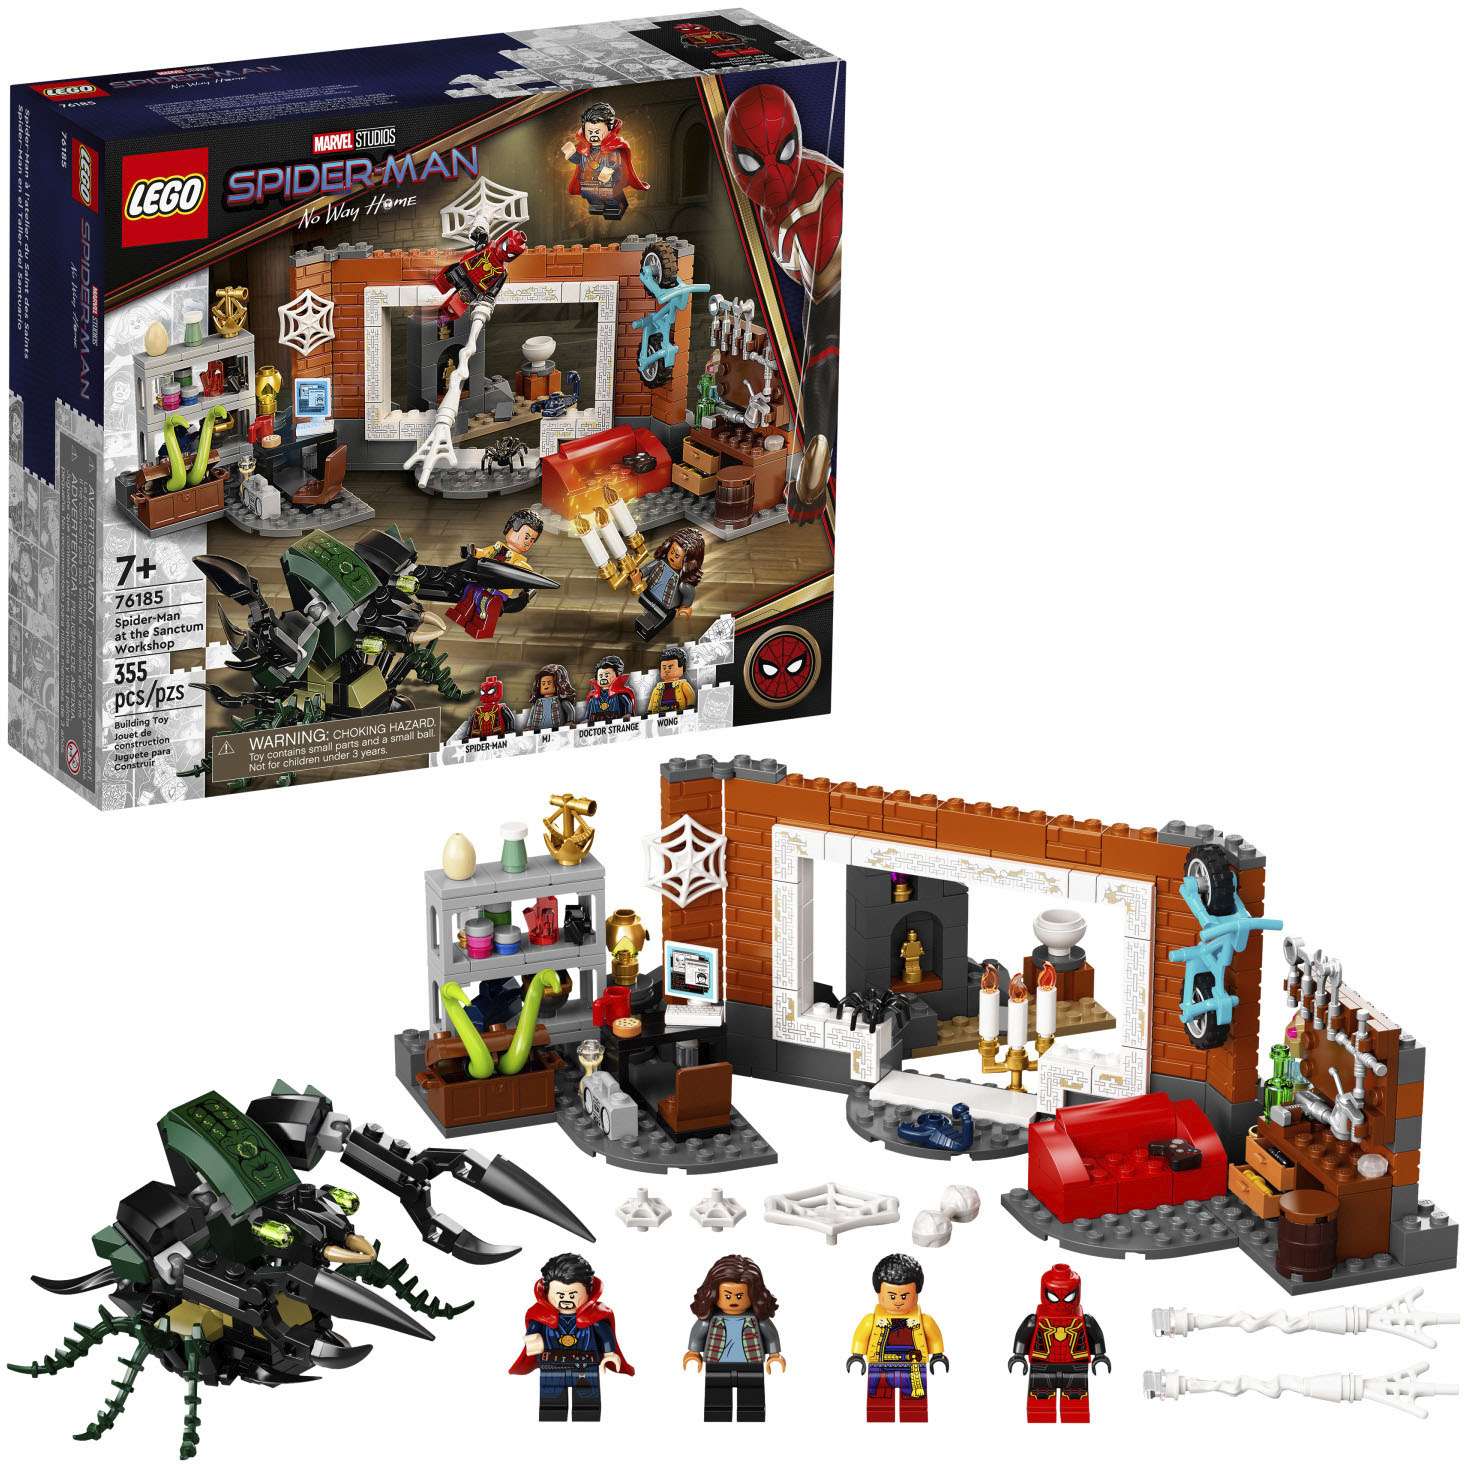 Baleinwalvis Het koud krijgen voeden LEGO Super Heroes Spider-Man at the Sanctum Workshop 76185 6332655 - Best  Buy